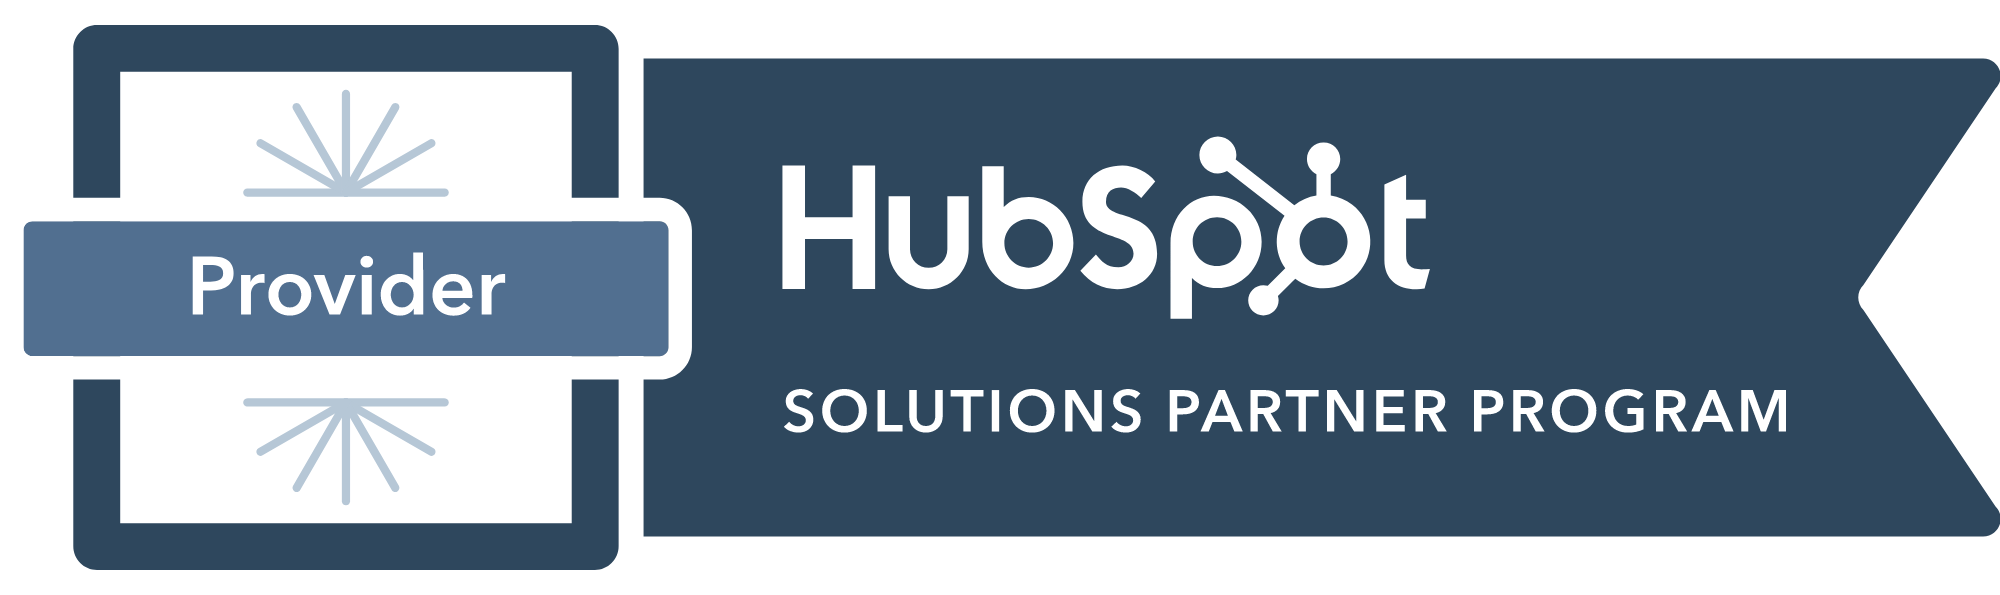 Hubspot Solutions Partner